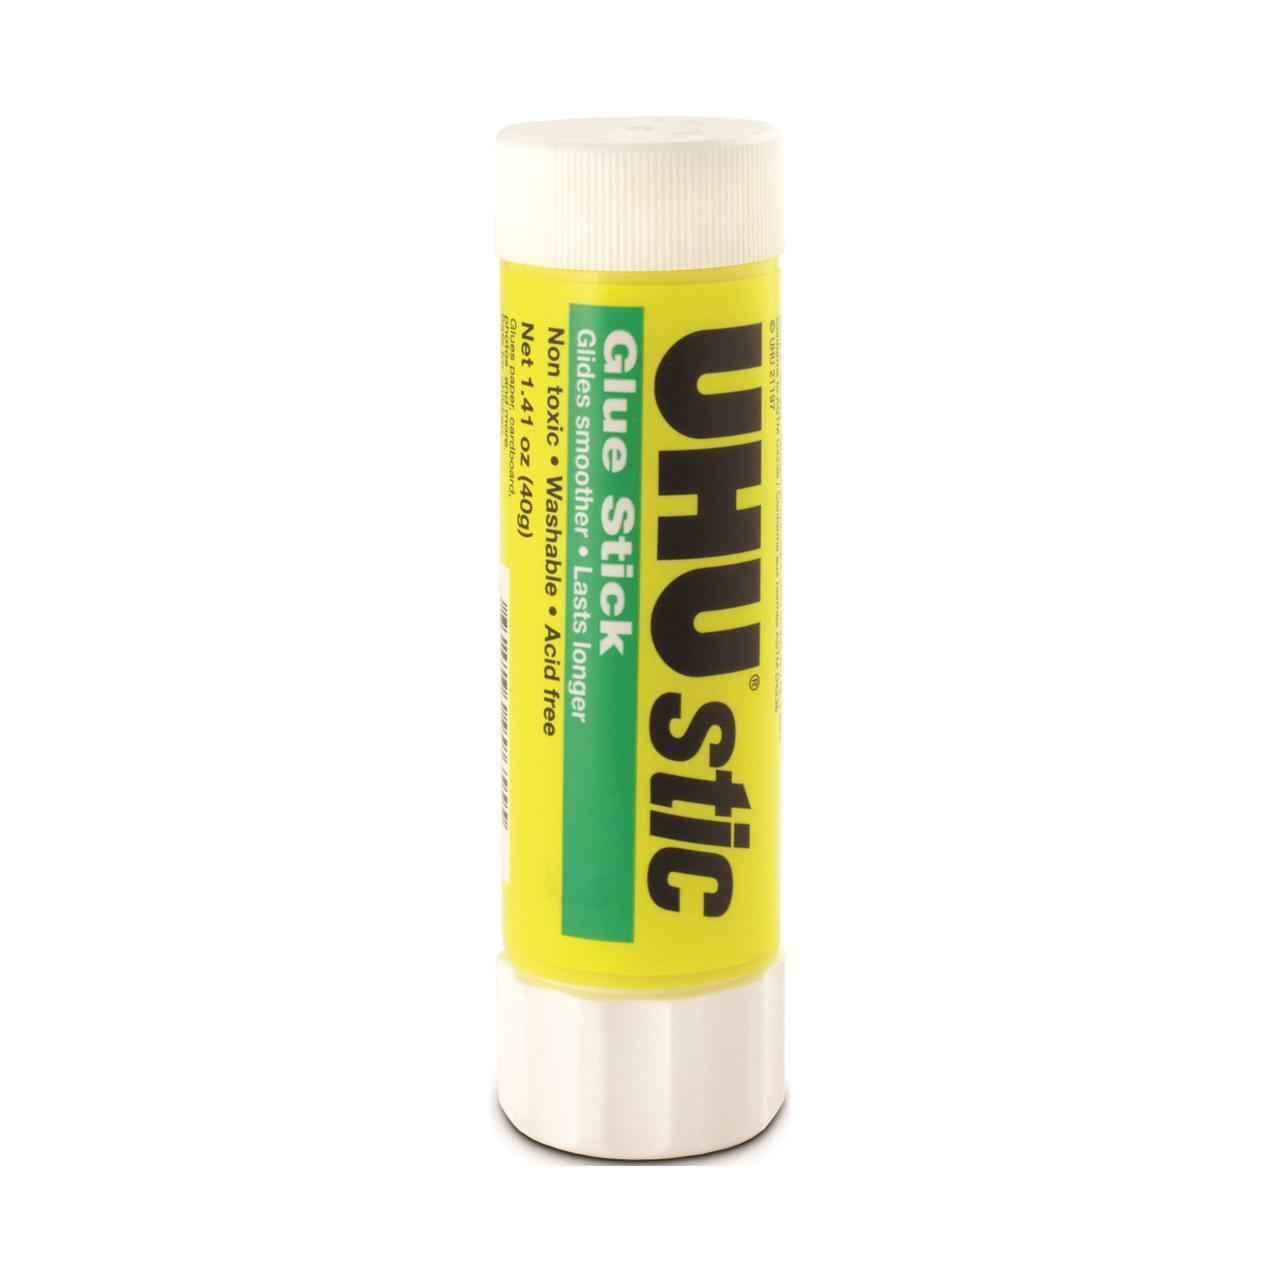 UHU Glue Stick Clear Jumbo 1.41oz